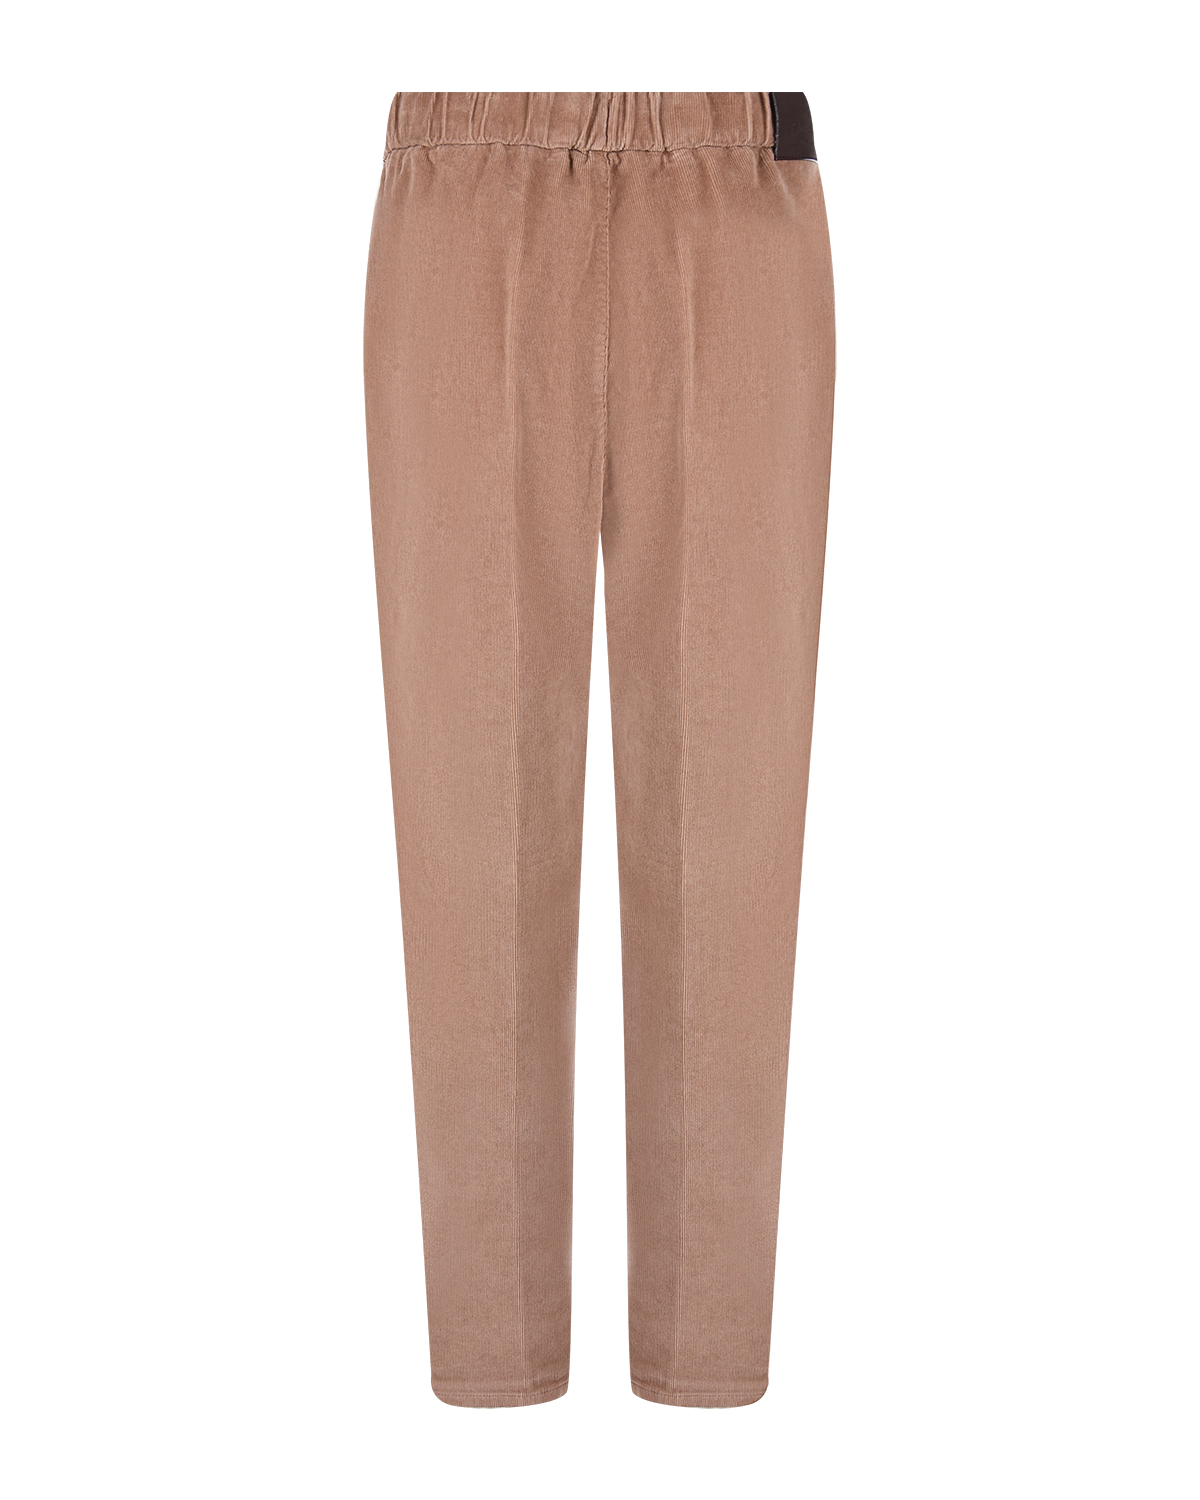 Коричневые брюки из вельвета Panicale, размер 40, цвет коричневый - фото 6